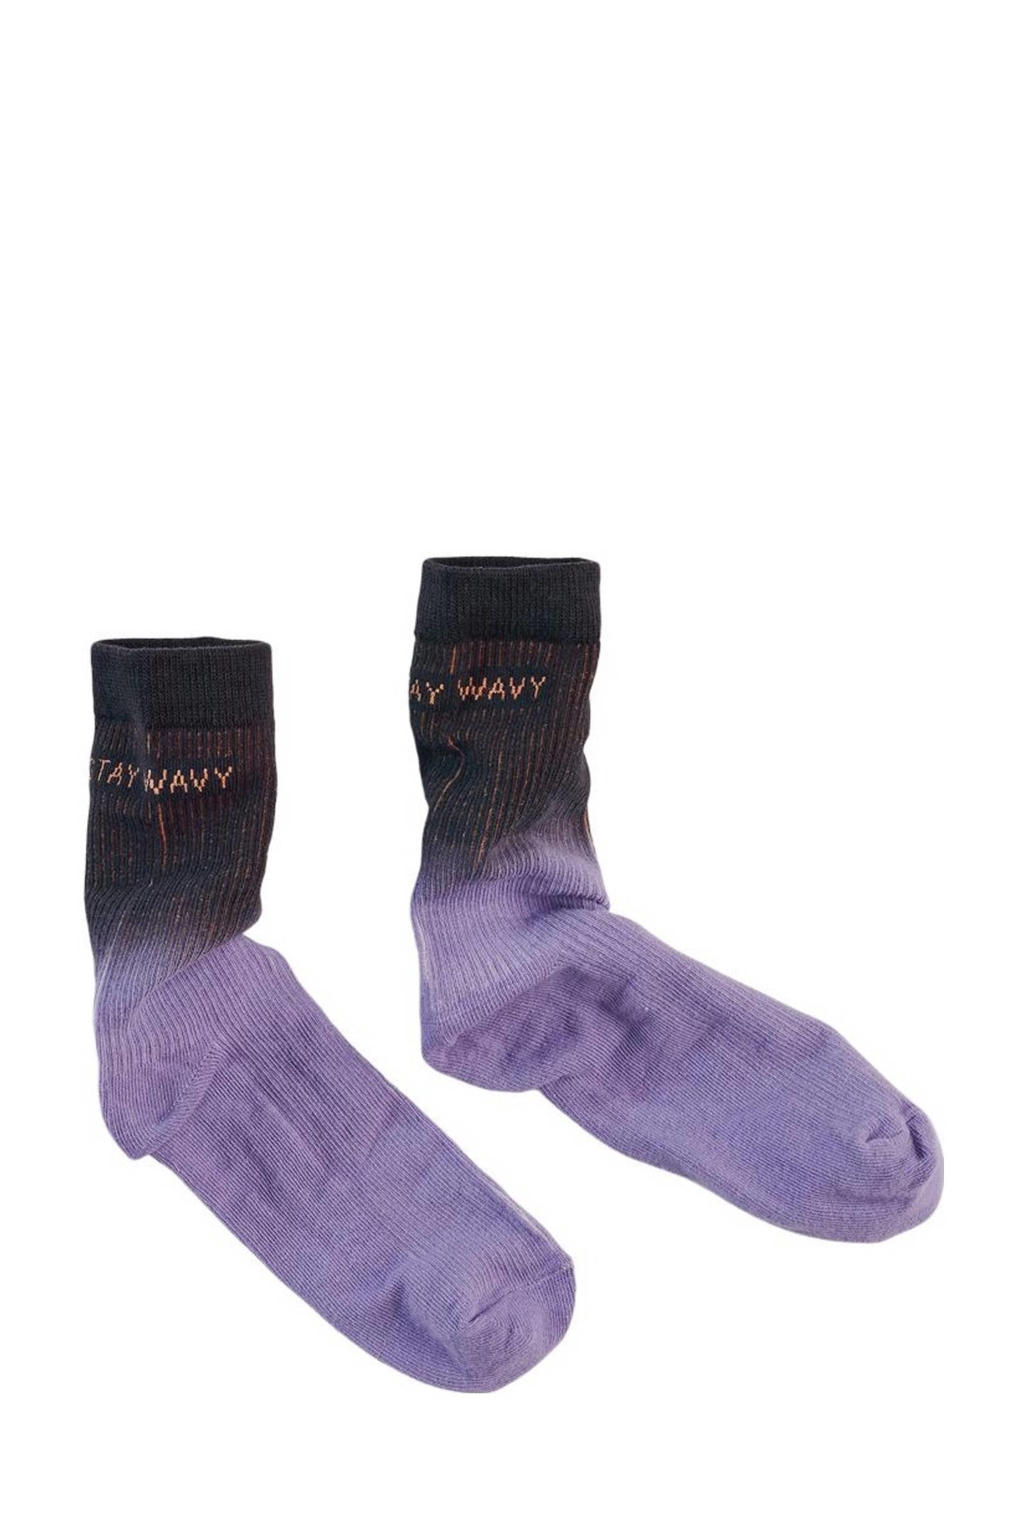 Z8 sokken paars/zwart